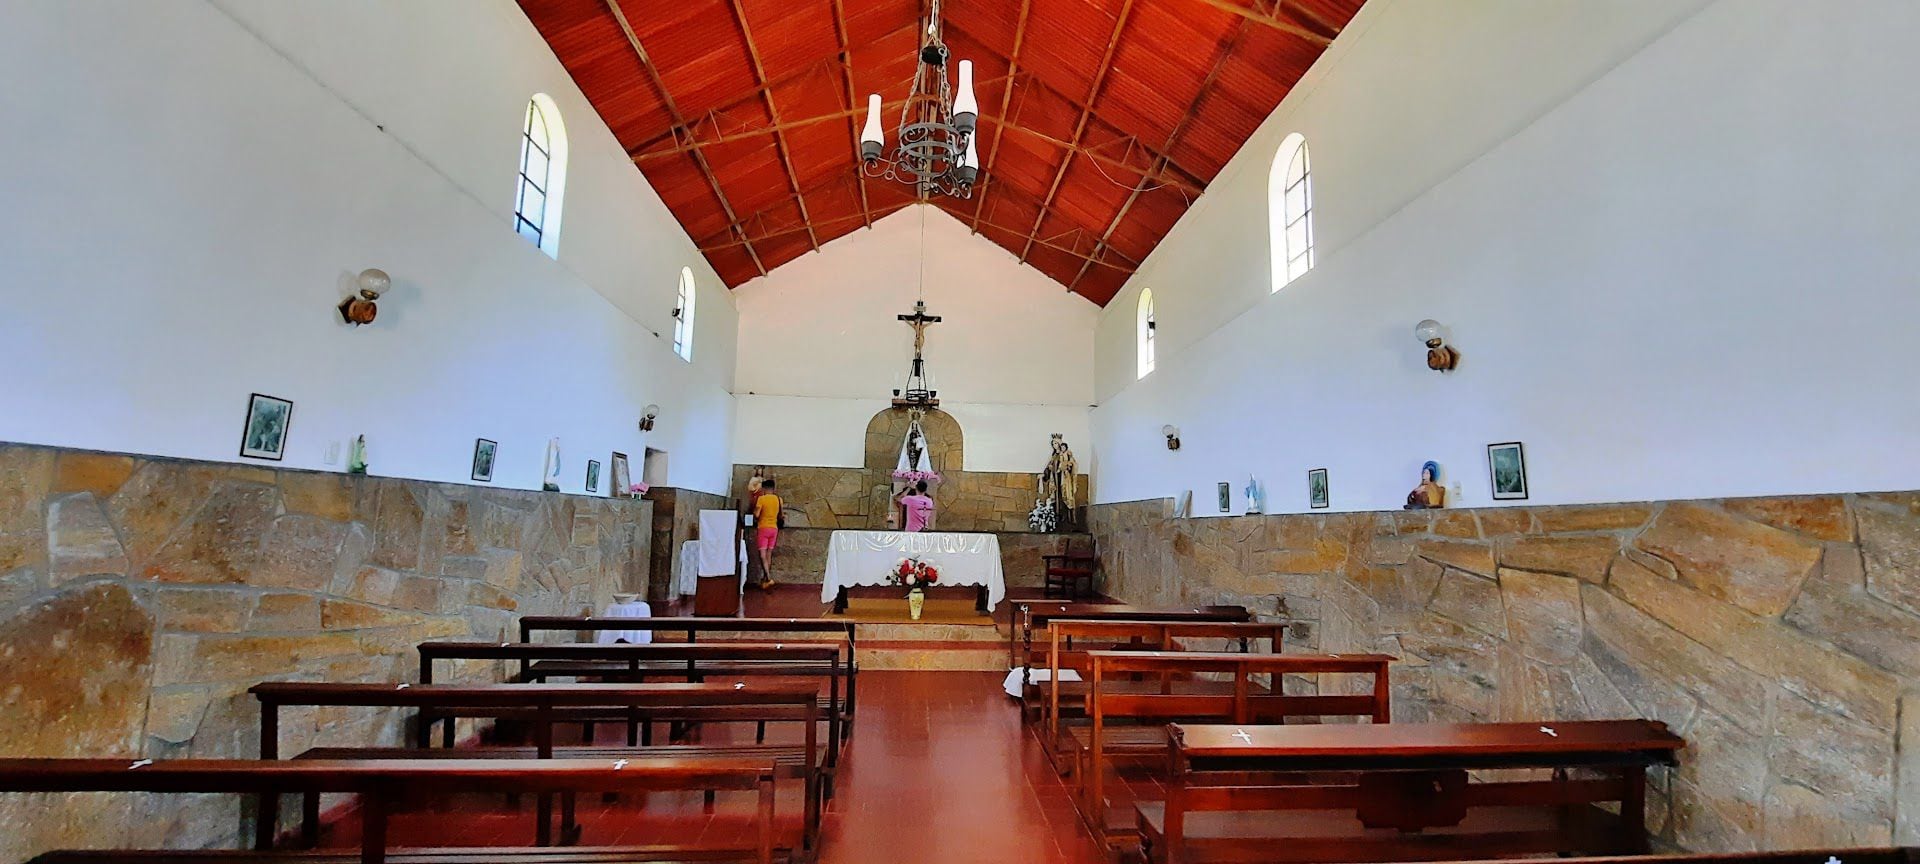 La iglesia desde el interior: cada 16 de julio se realiza la procesión con desfile gauchesco para venerar a Nuestra Señora del Carmen